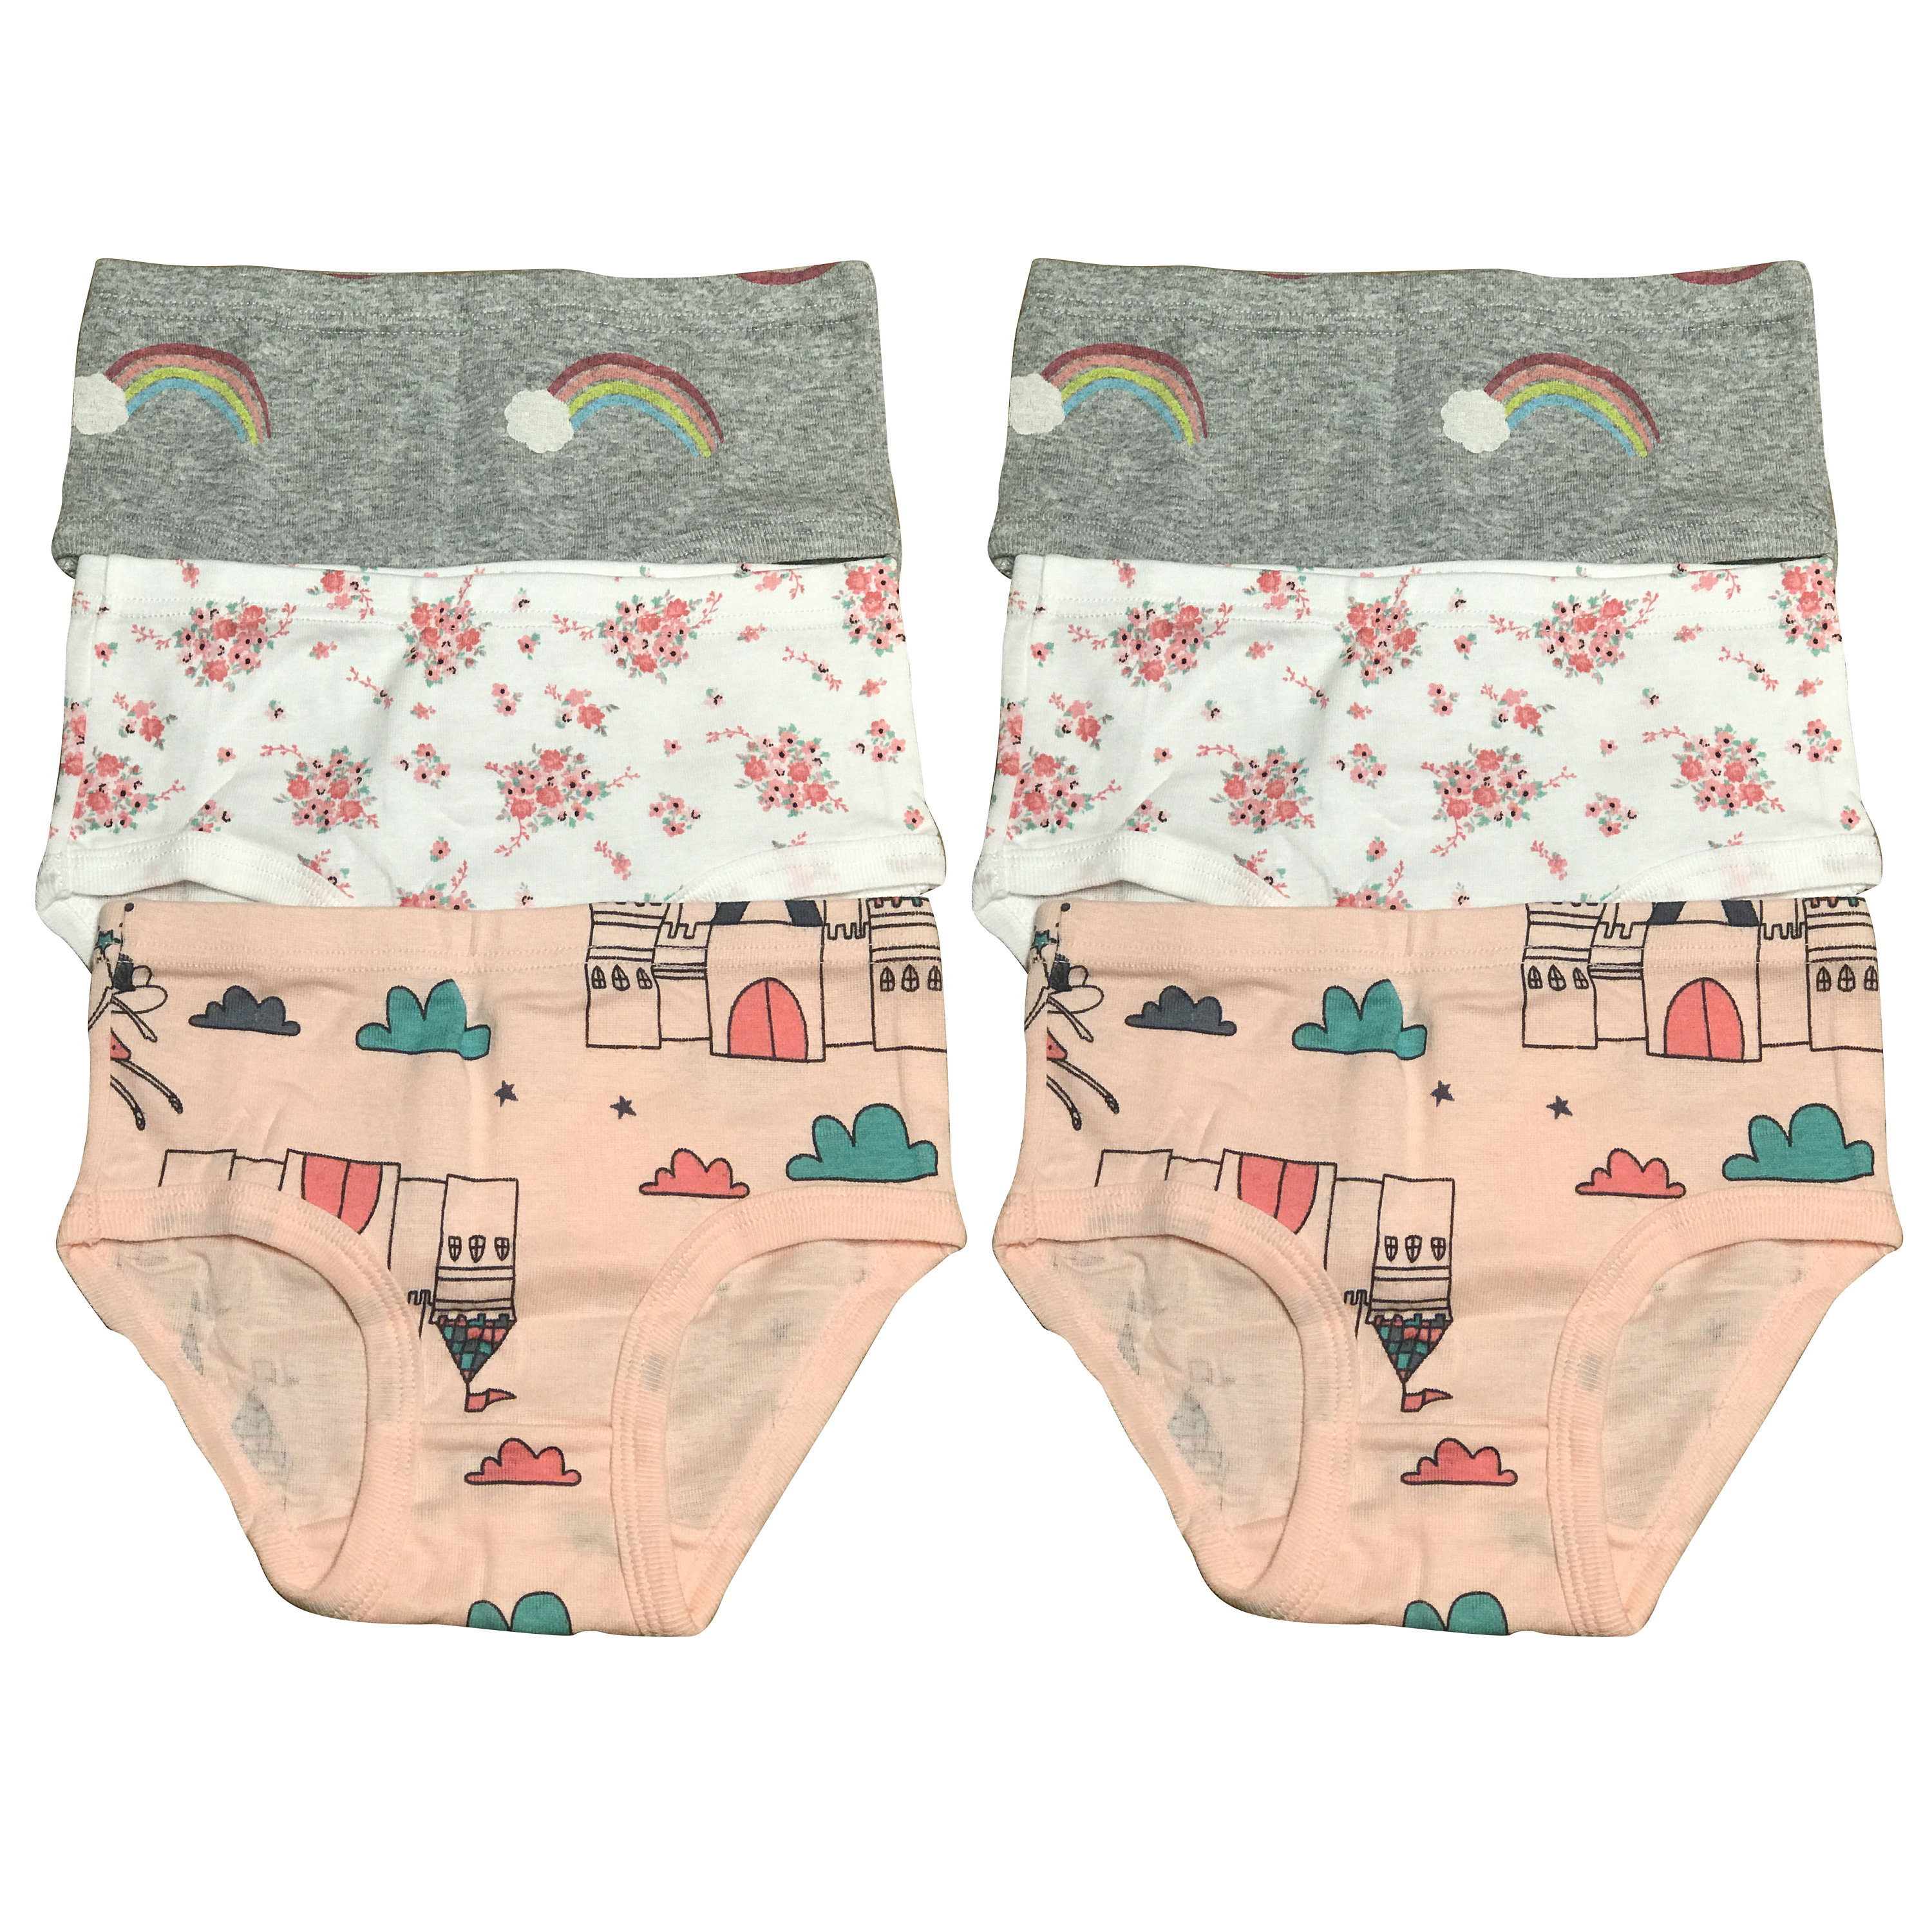 6-Pack Baby Cotton Underwear Little Girls' Briefs Toddler Undies